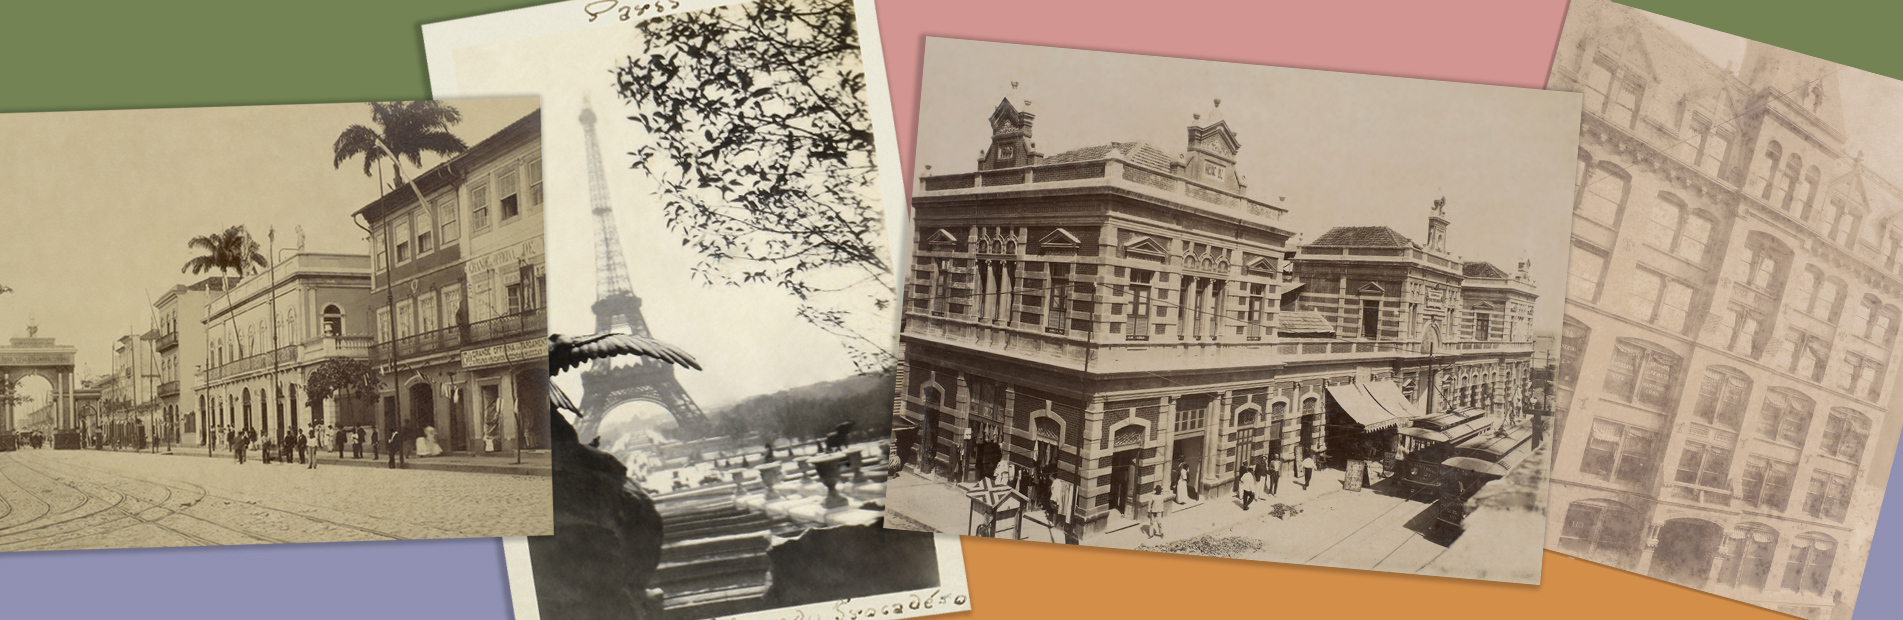 Pontos de vista – fotografia e cidade em álbuns do Arquivo Nacional